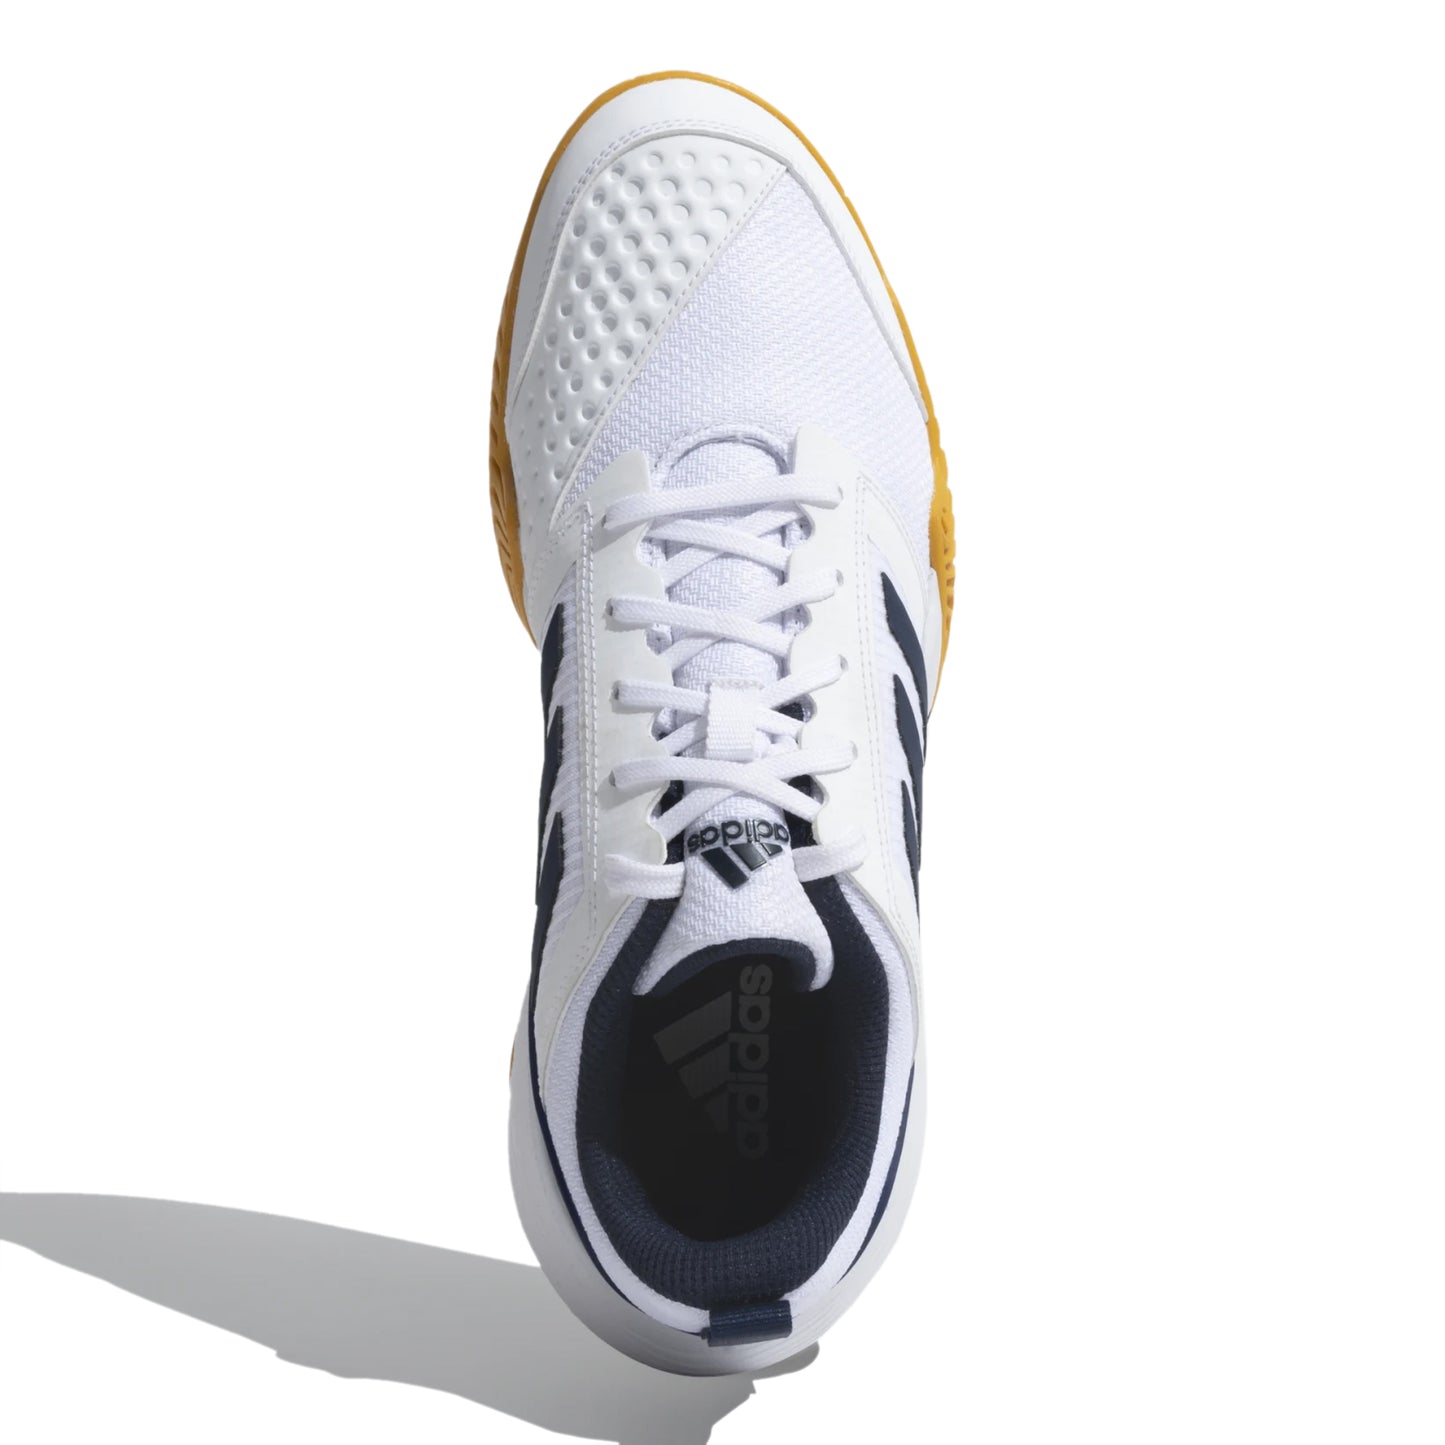 Adidas Stin Tns 23 Tennis Shoes - Best Price online Prokicksports.com